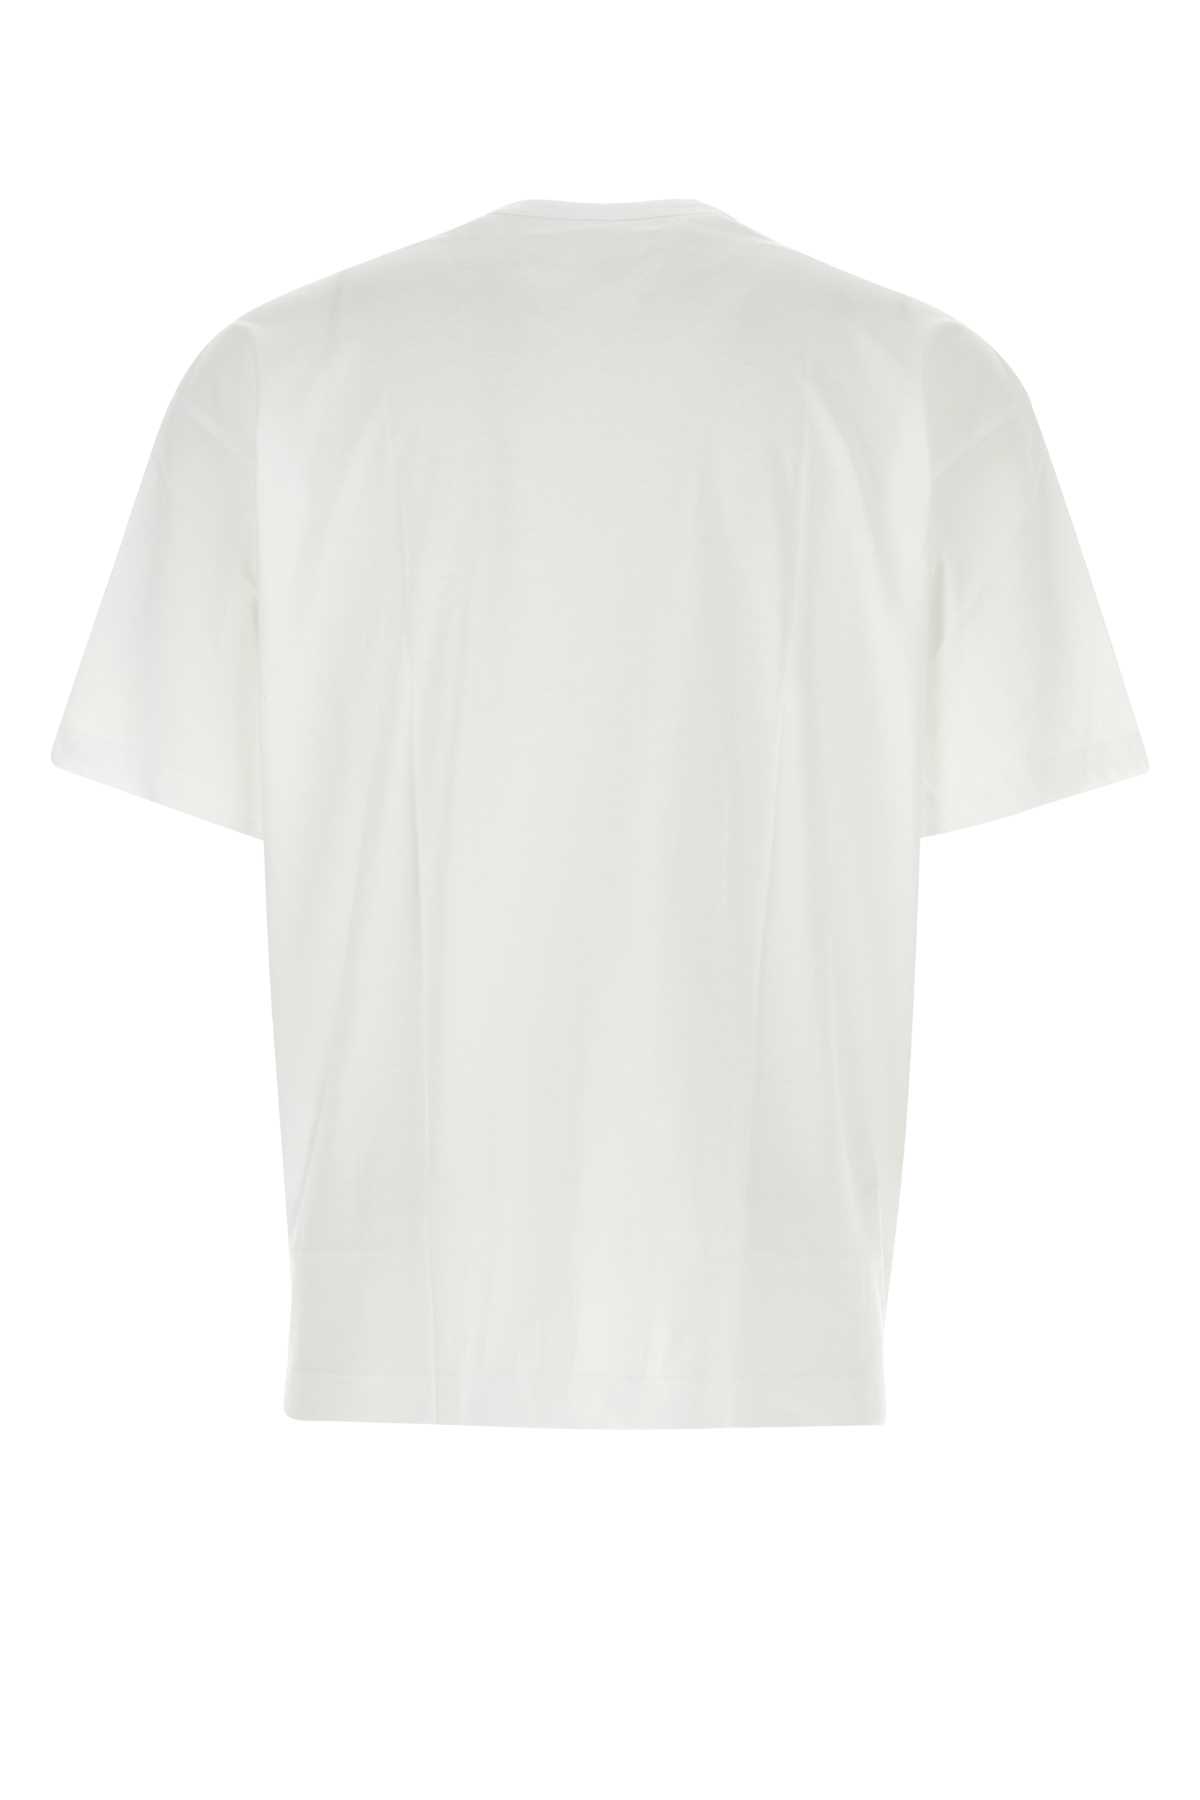 Comme Des Garçons Shirt White Cotton Comme Des Garã§ons Shirt X Lacoste T-shirt